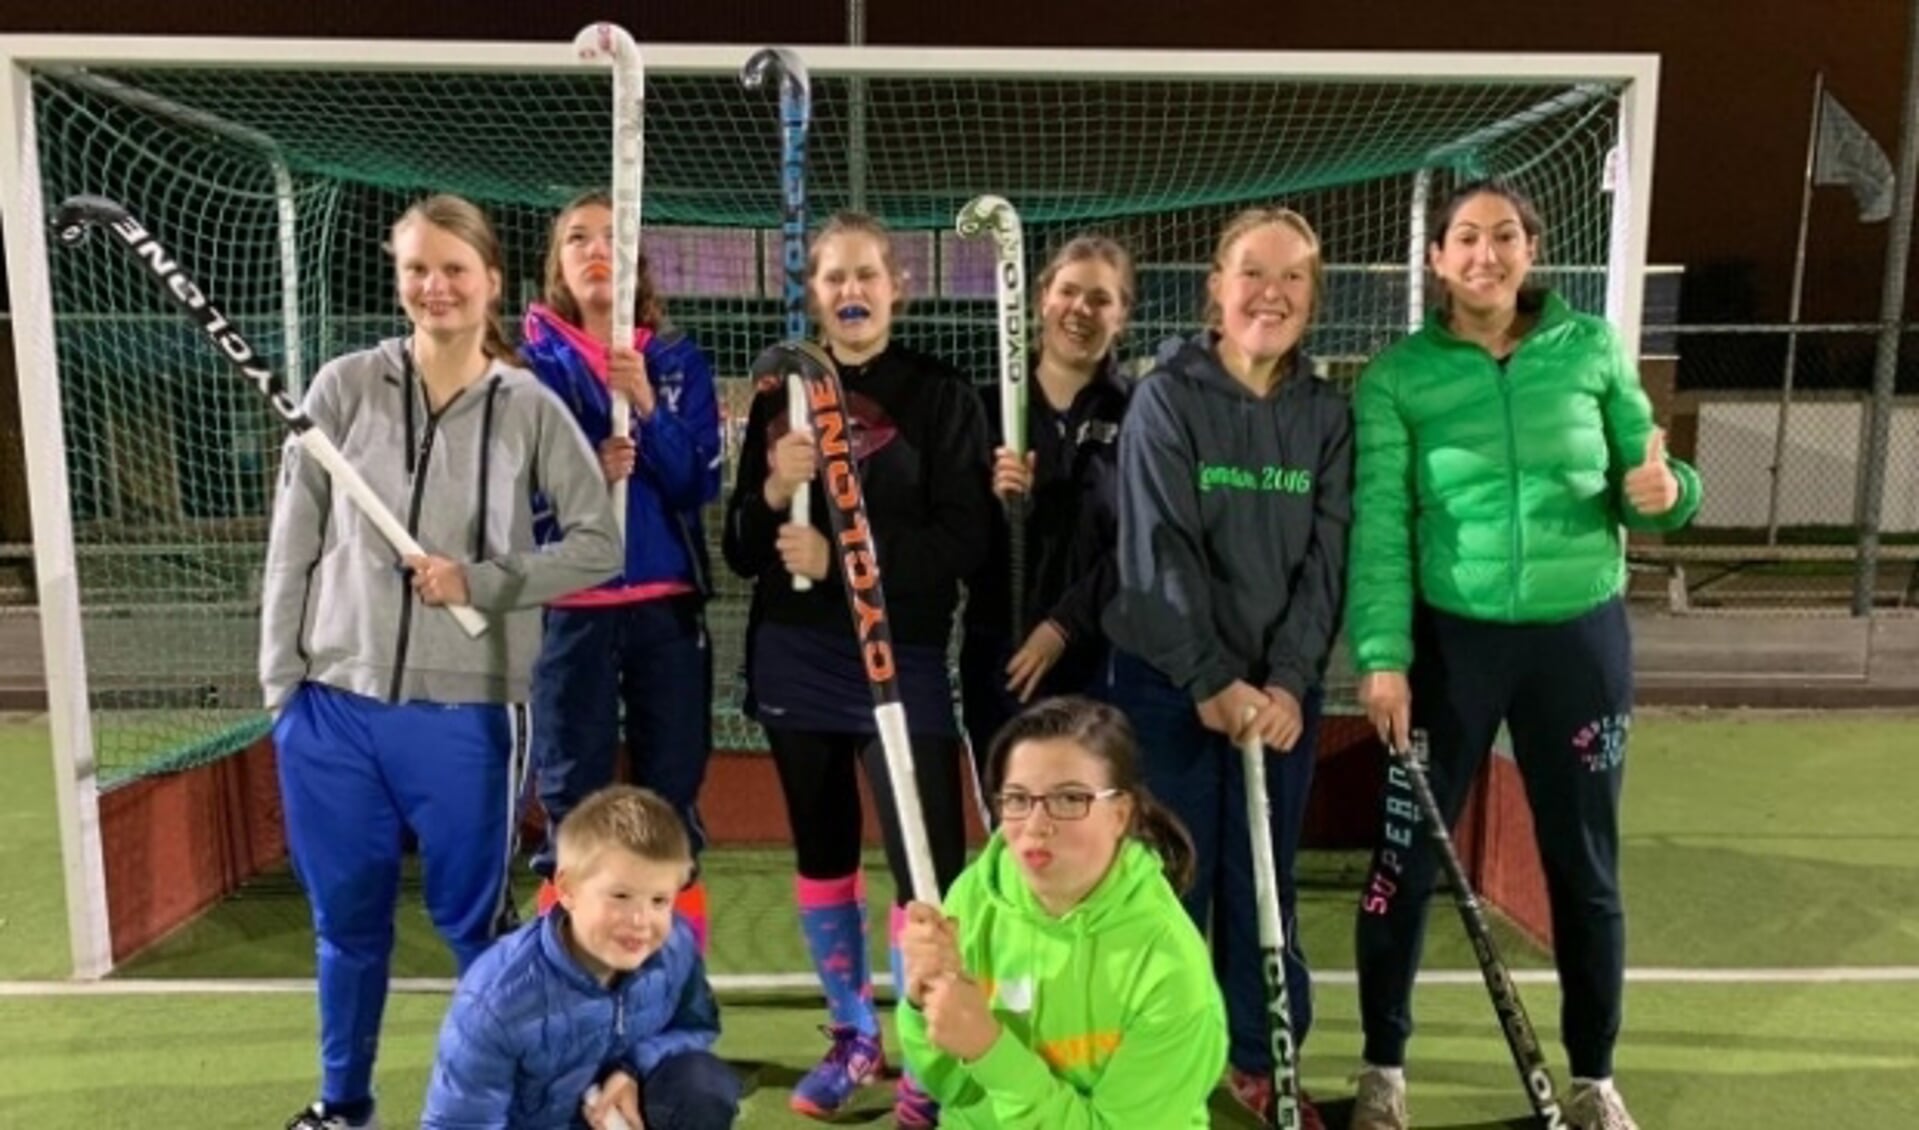  Het G-hockey team traint en speelt al 5 jaar met veel plezier samen en is op zoek naar versterking. www.hvbleiswijk.nl. (Foto: PR)